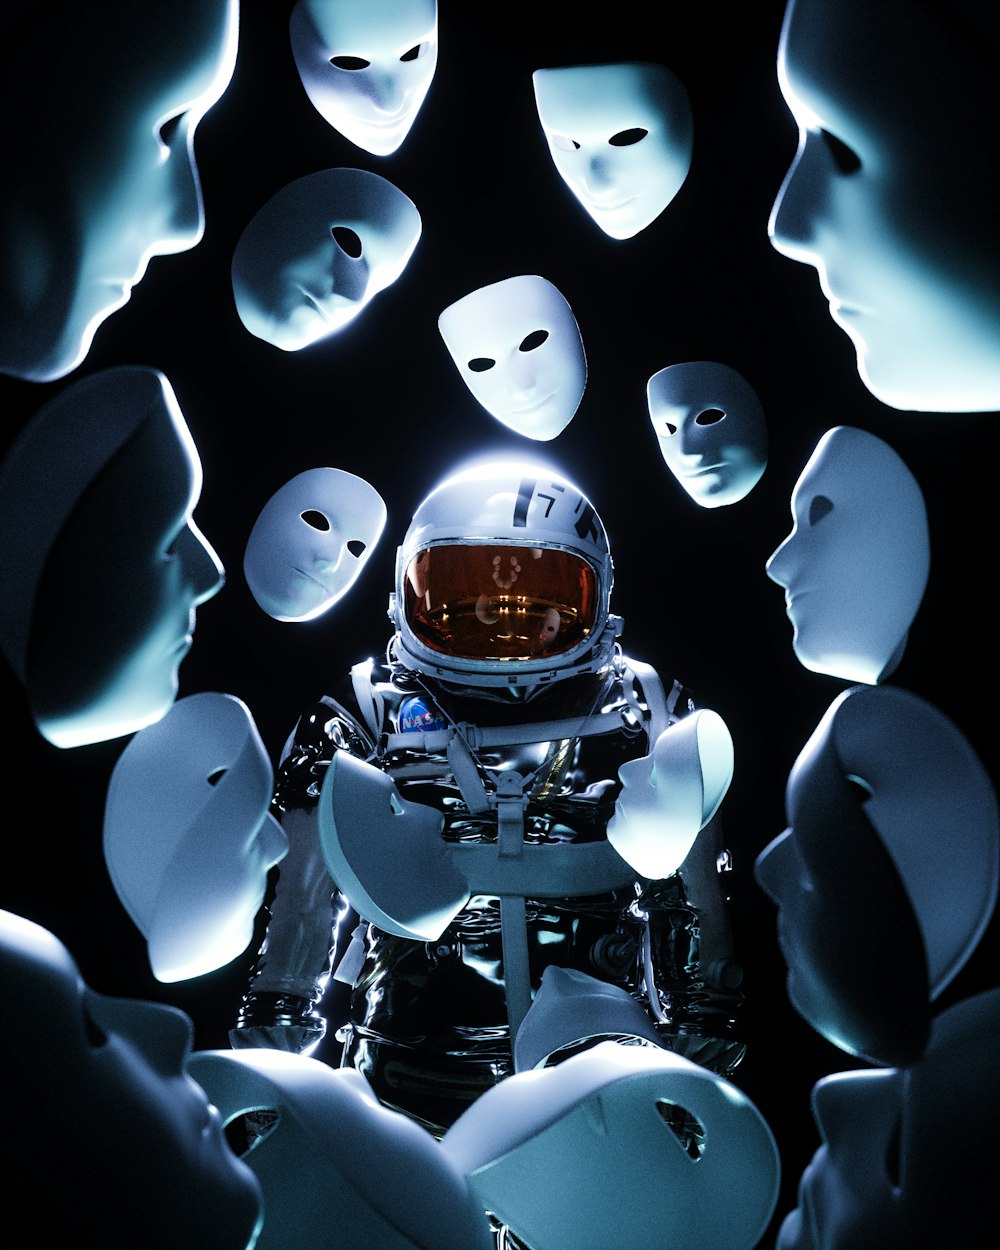 Un uomo in una tuta spaziale circondato da maschere bianche